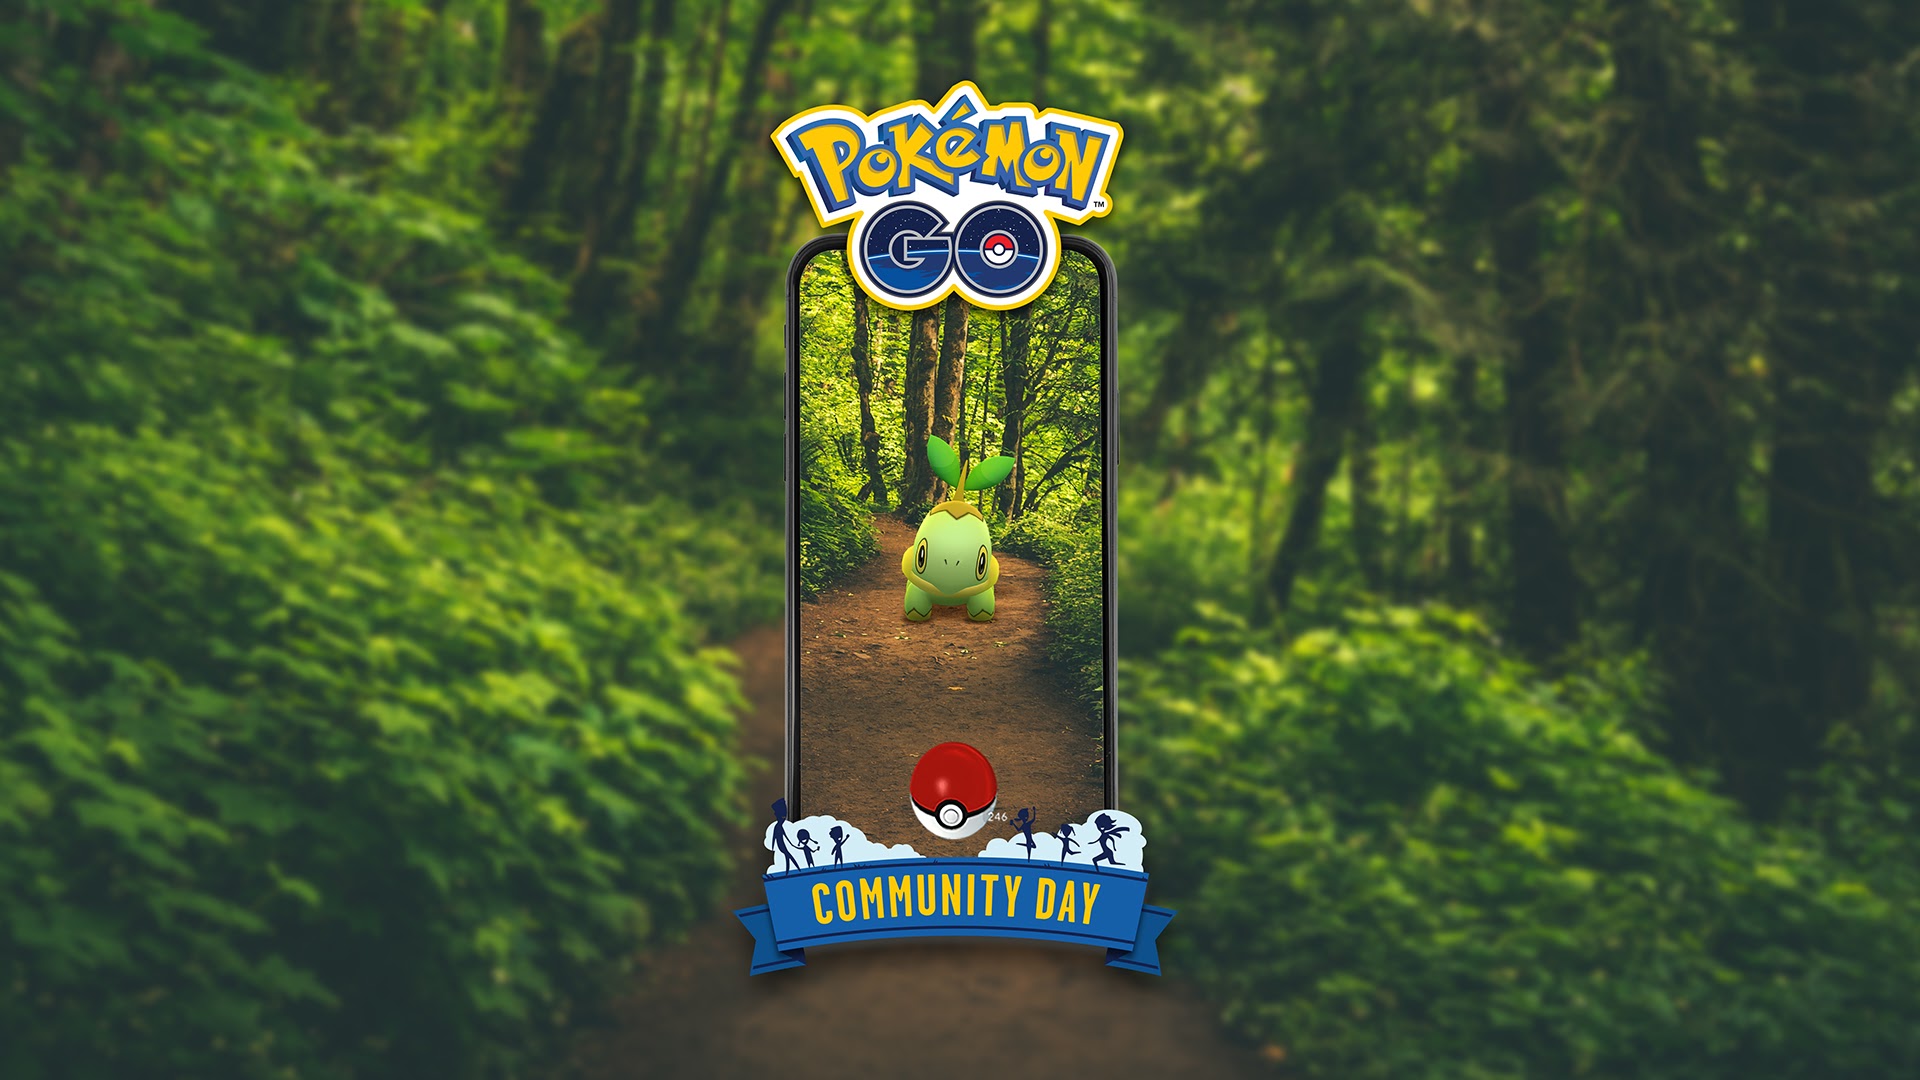 Acara Pokemon Go Community Day dimulai waktu dan hadiah acara untuk bulan September termasuk Turtwig dan Torterra yang mengkilap 2